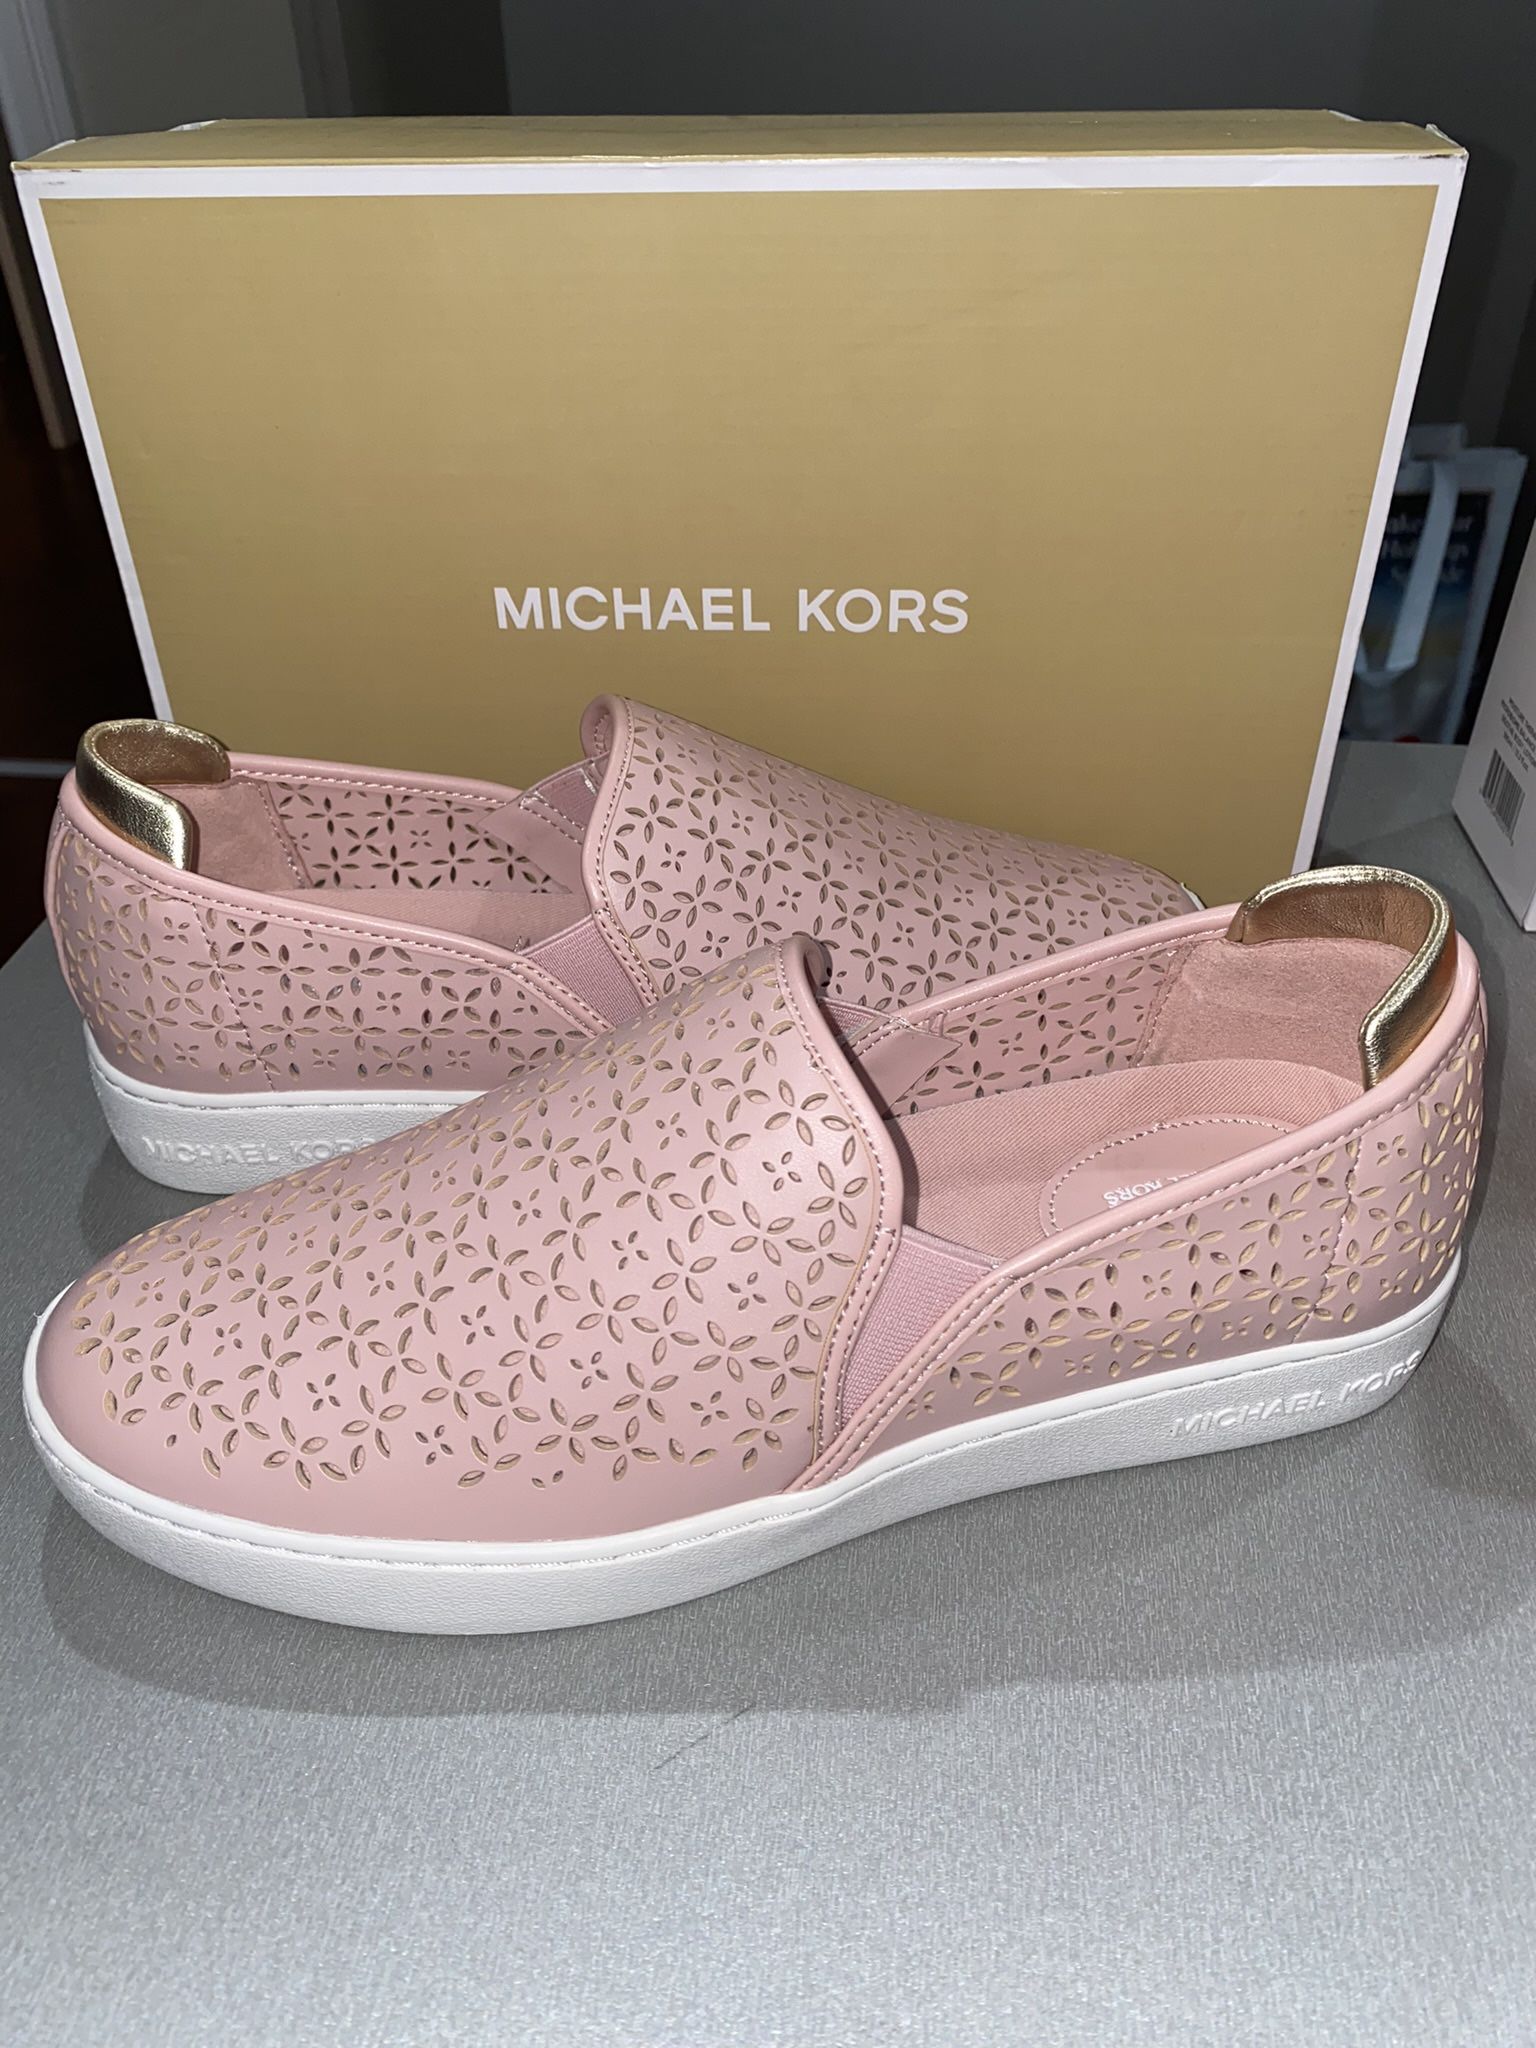 Women’s Size 10 Michael Kors Shoes 